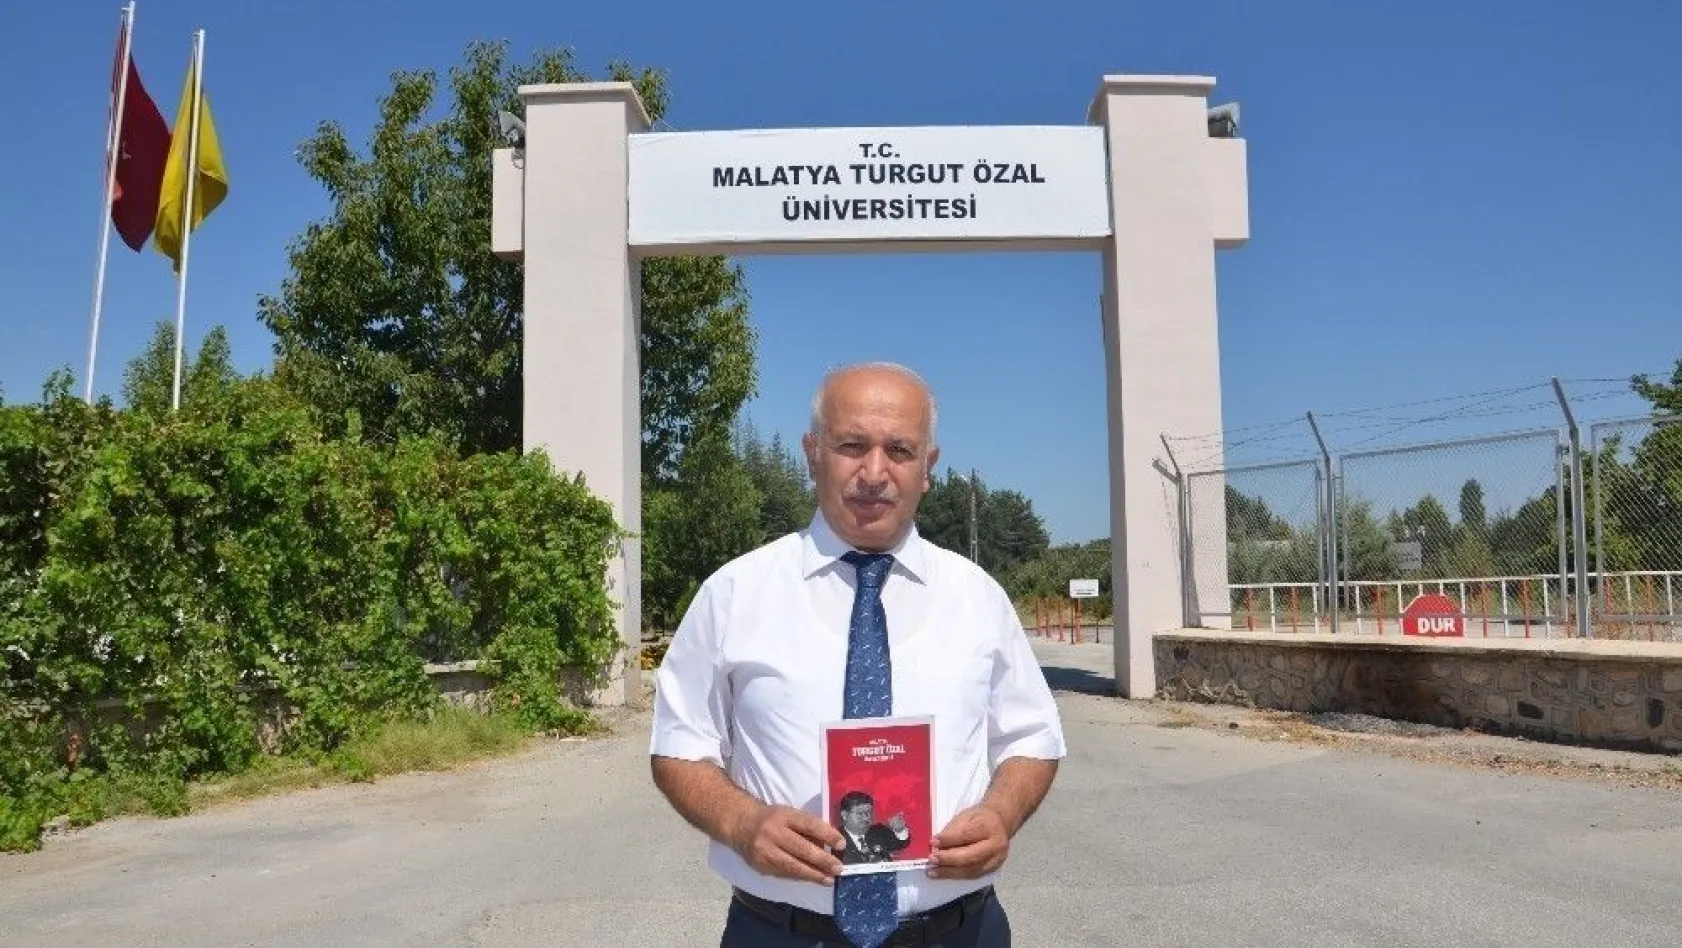 Turgut Özal Üniversitesi Rektör Adayı İçen, projelerini açıkladı
